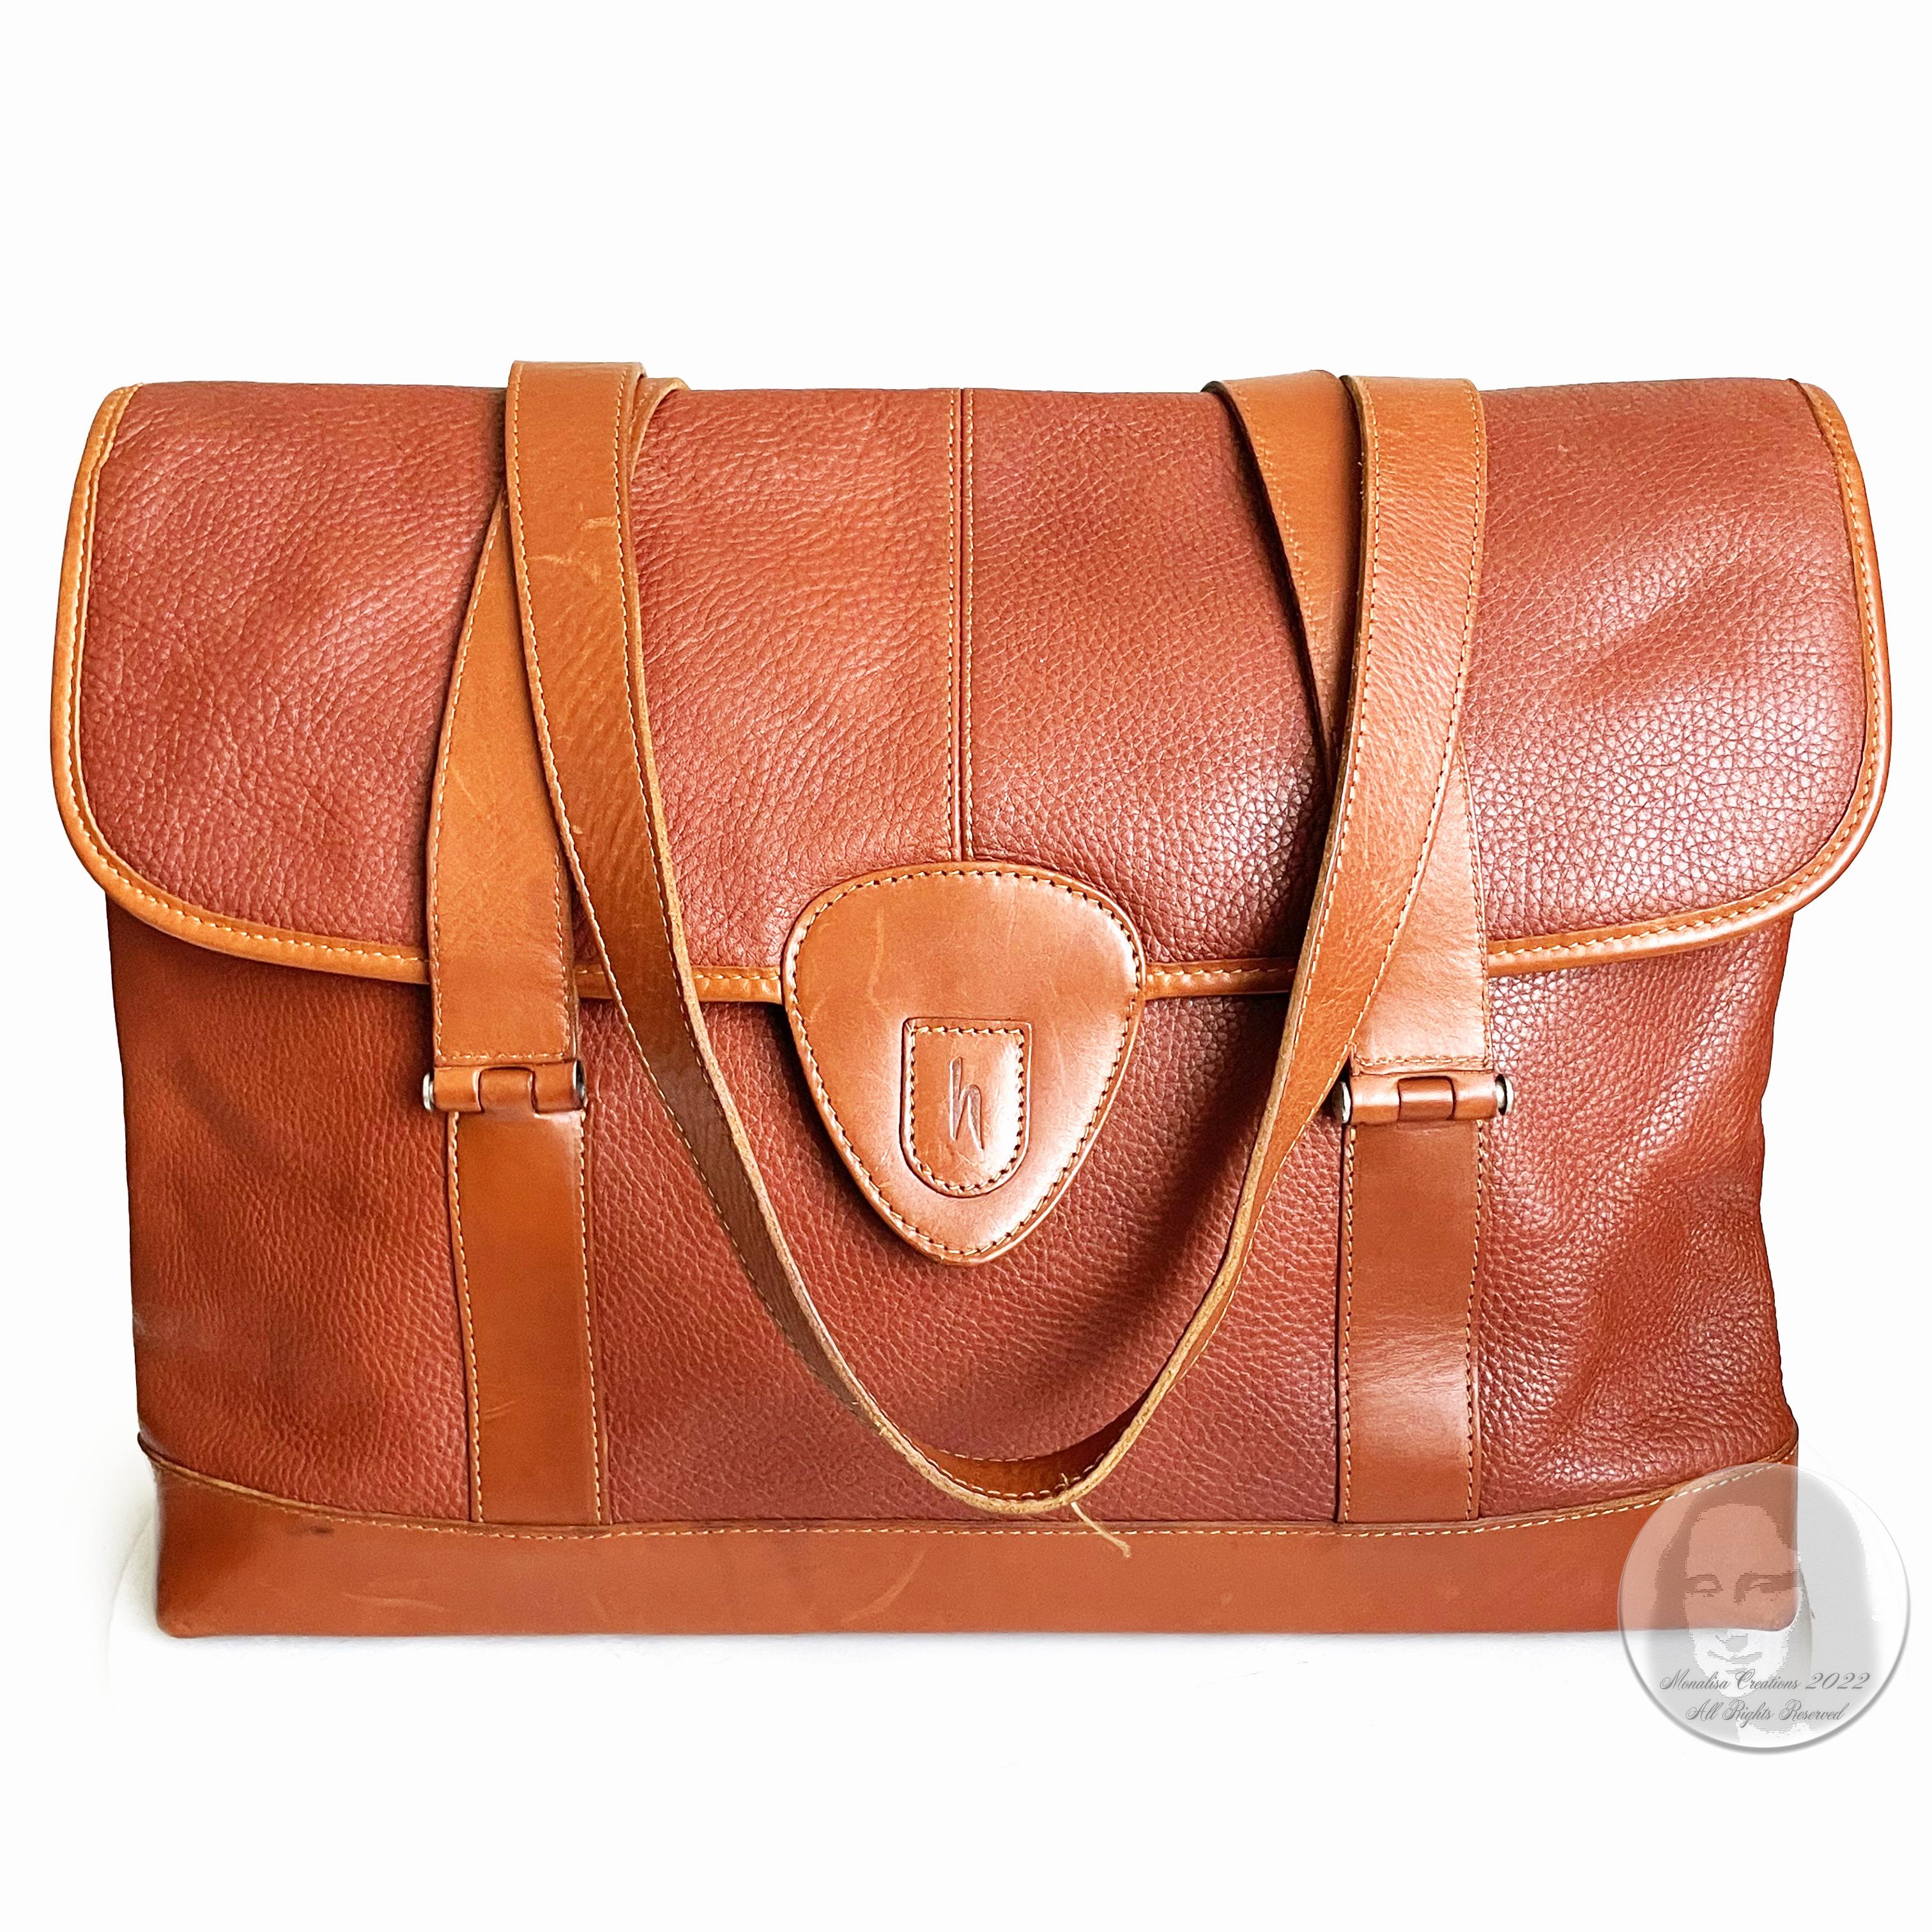 Hartmann Business Bag Briefcase Computer or Shoulder Bag British Tan Leather 1